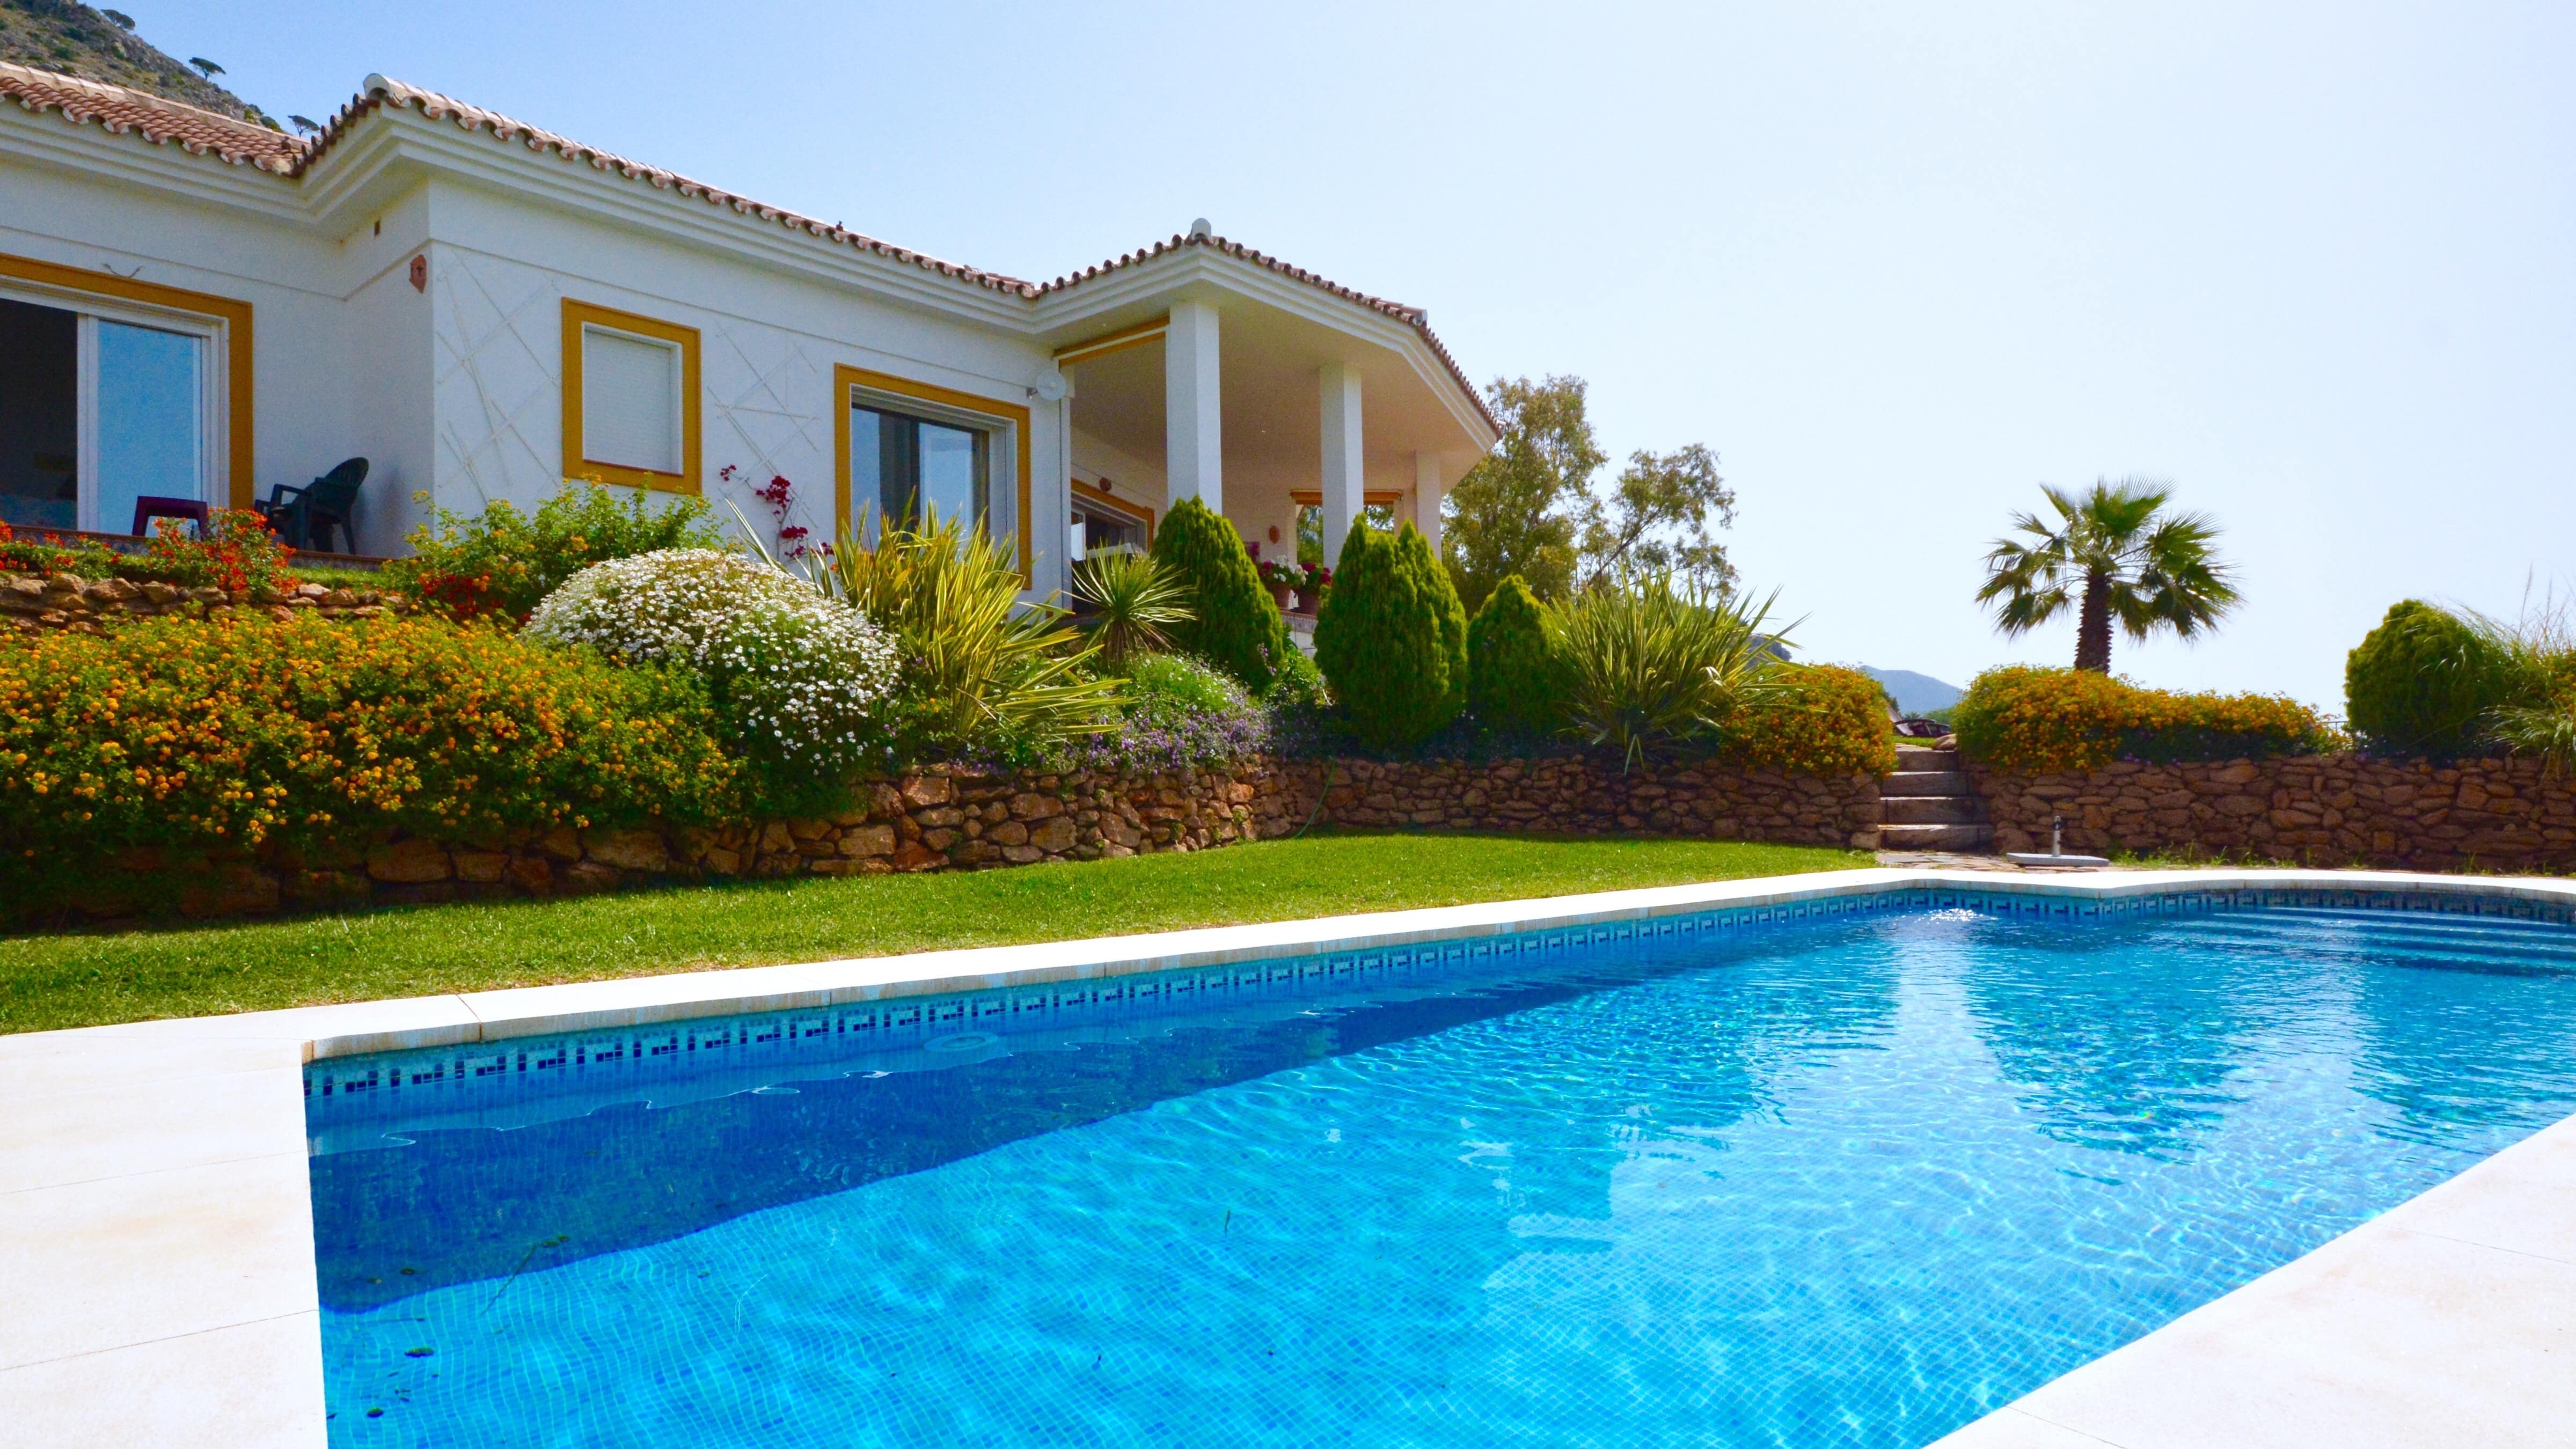 Louer une maison de vacances avec piscine pas chère